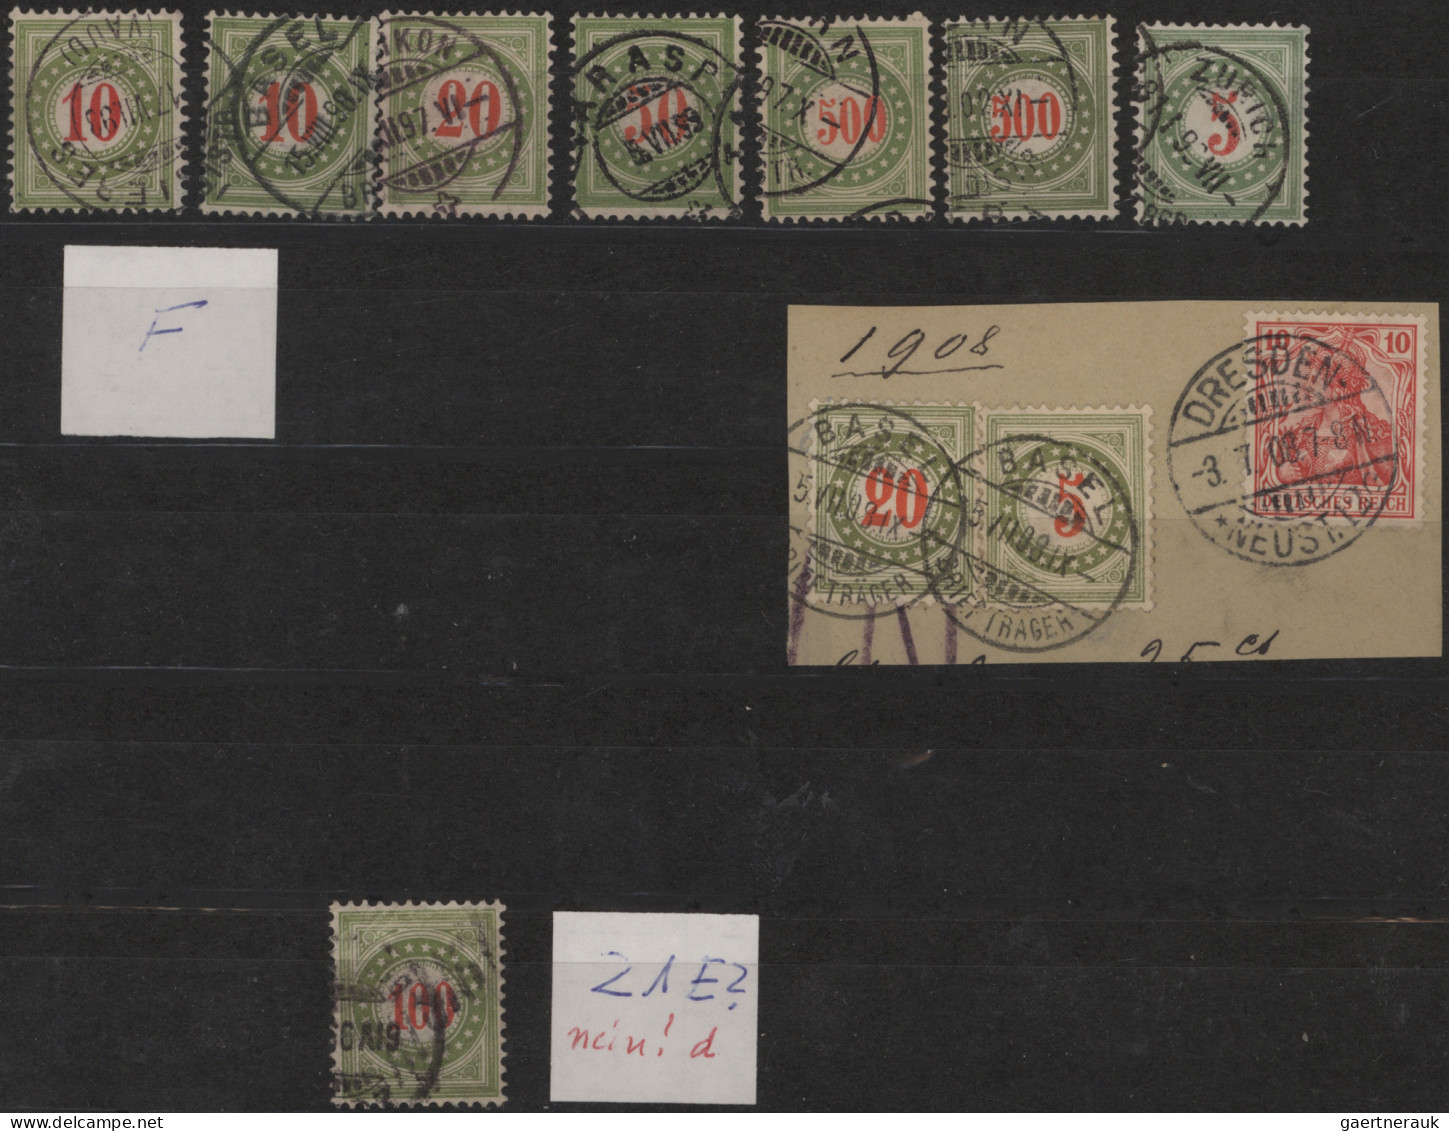 Schweiz - Portomarken: 1878-1940: Sammlungs- und Dublettenbestand von fast 600 N